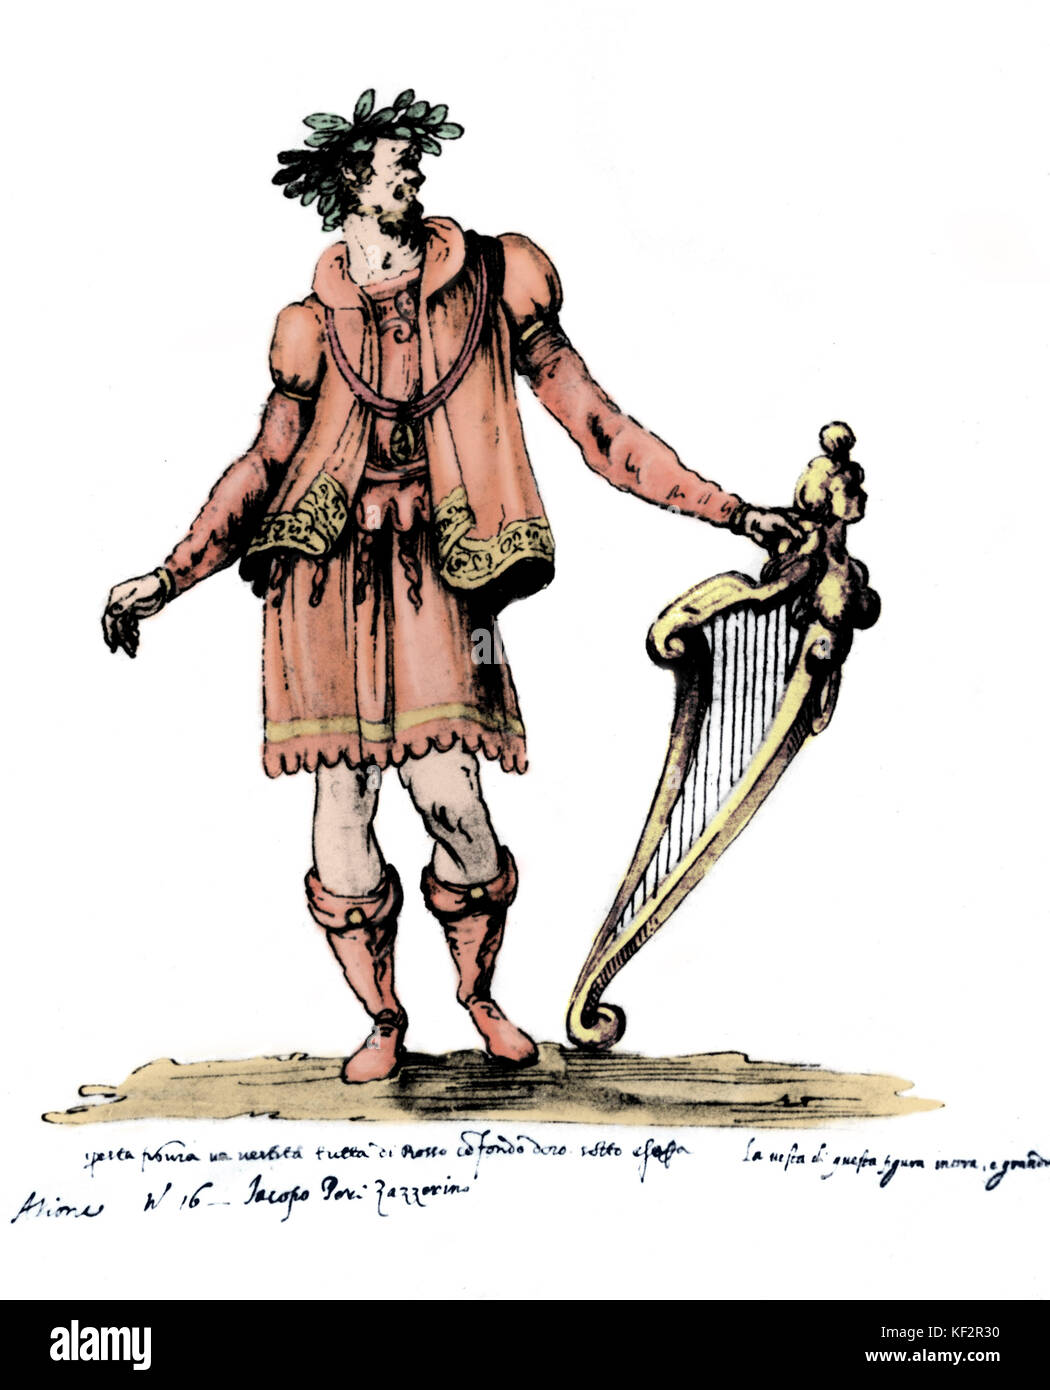 PERI, Jacopo - in Kostüm wie Arion. Italienischer Komponist und Sänger, 1561-1633. "Diese Zahl ist in rot über gold Stiftung gekleidet zu sein. Unter ist er ein Schwert zu tragen. Das Kostüm von dieser Zahl ist zu groß. Szene Nr. 16 Jacopo Peri die Rothaarige." eingefärbte Version. Stockfoto